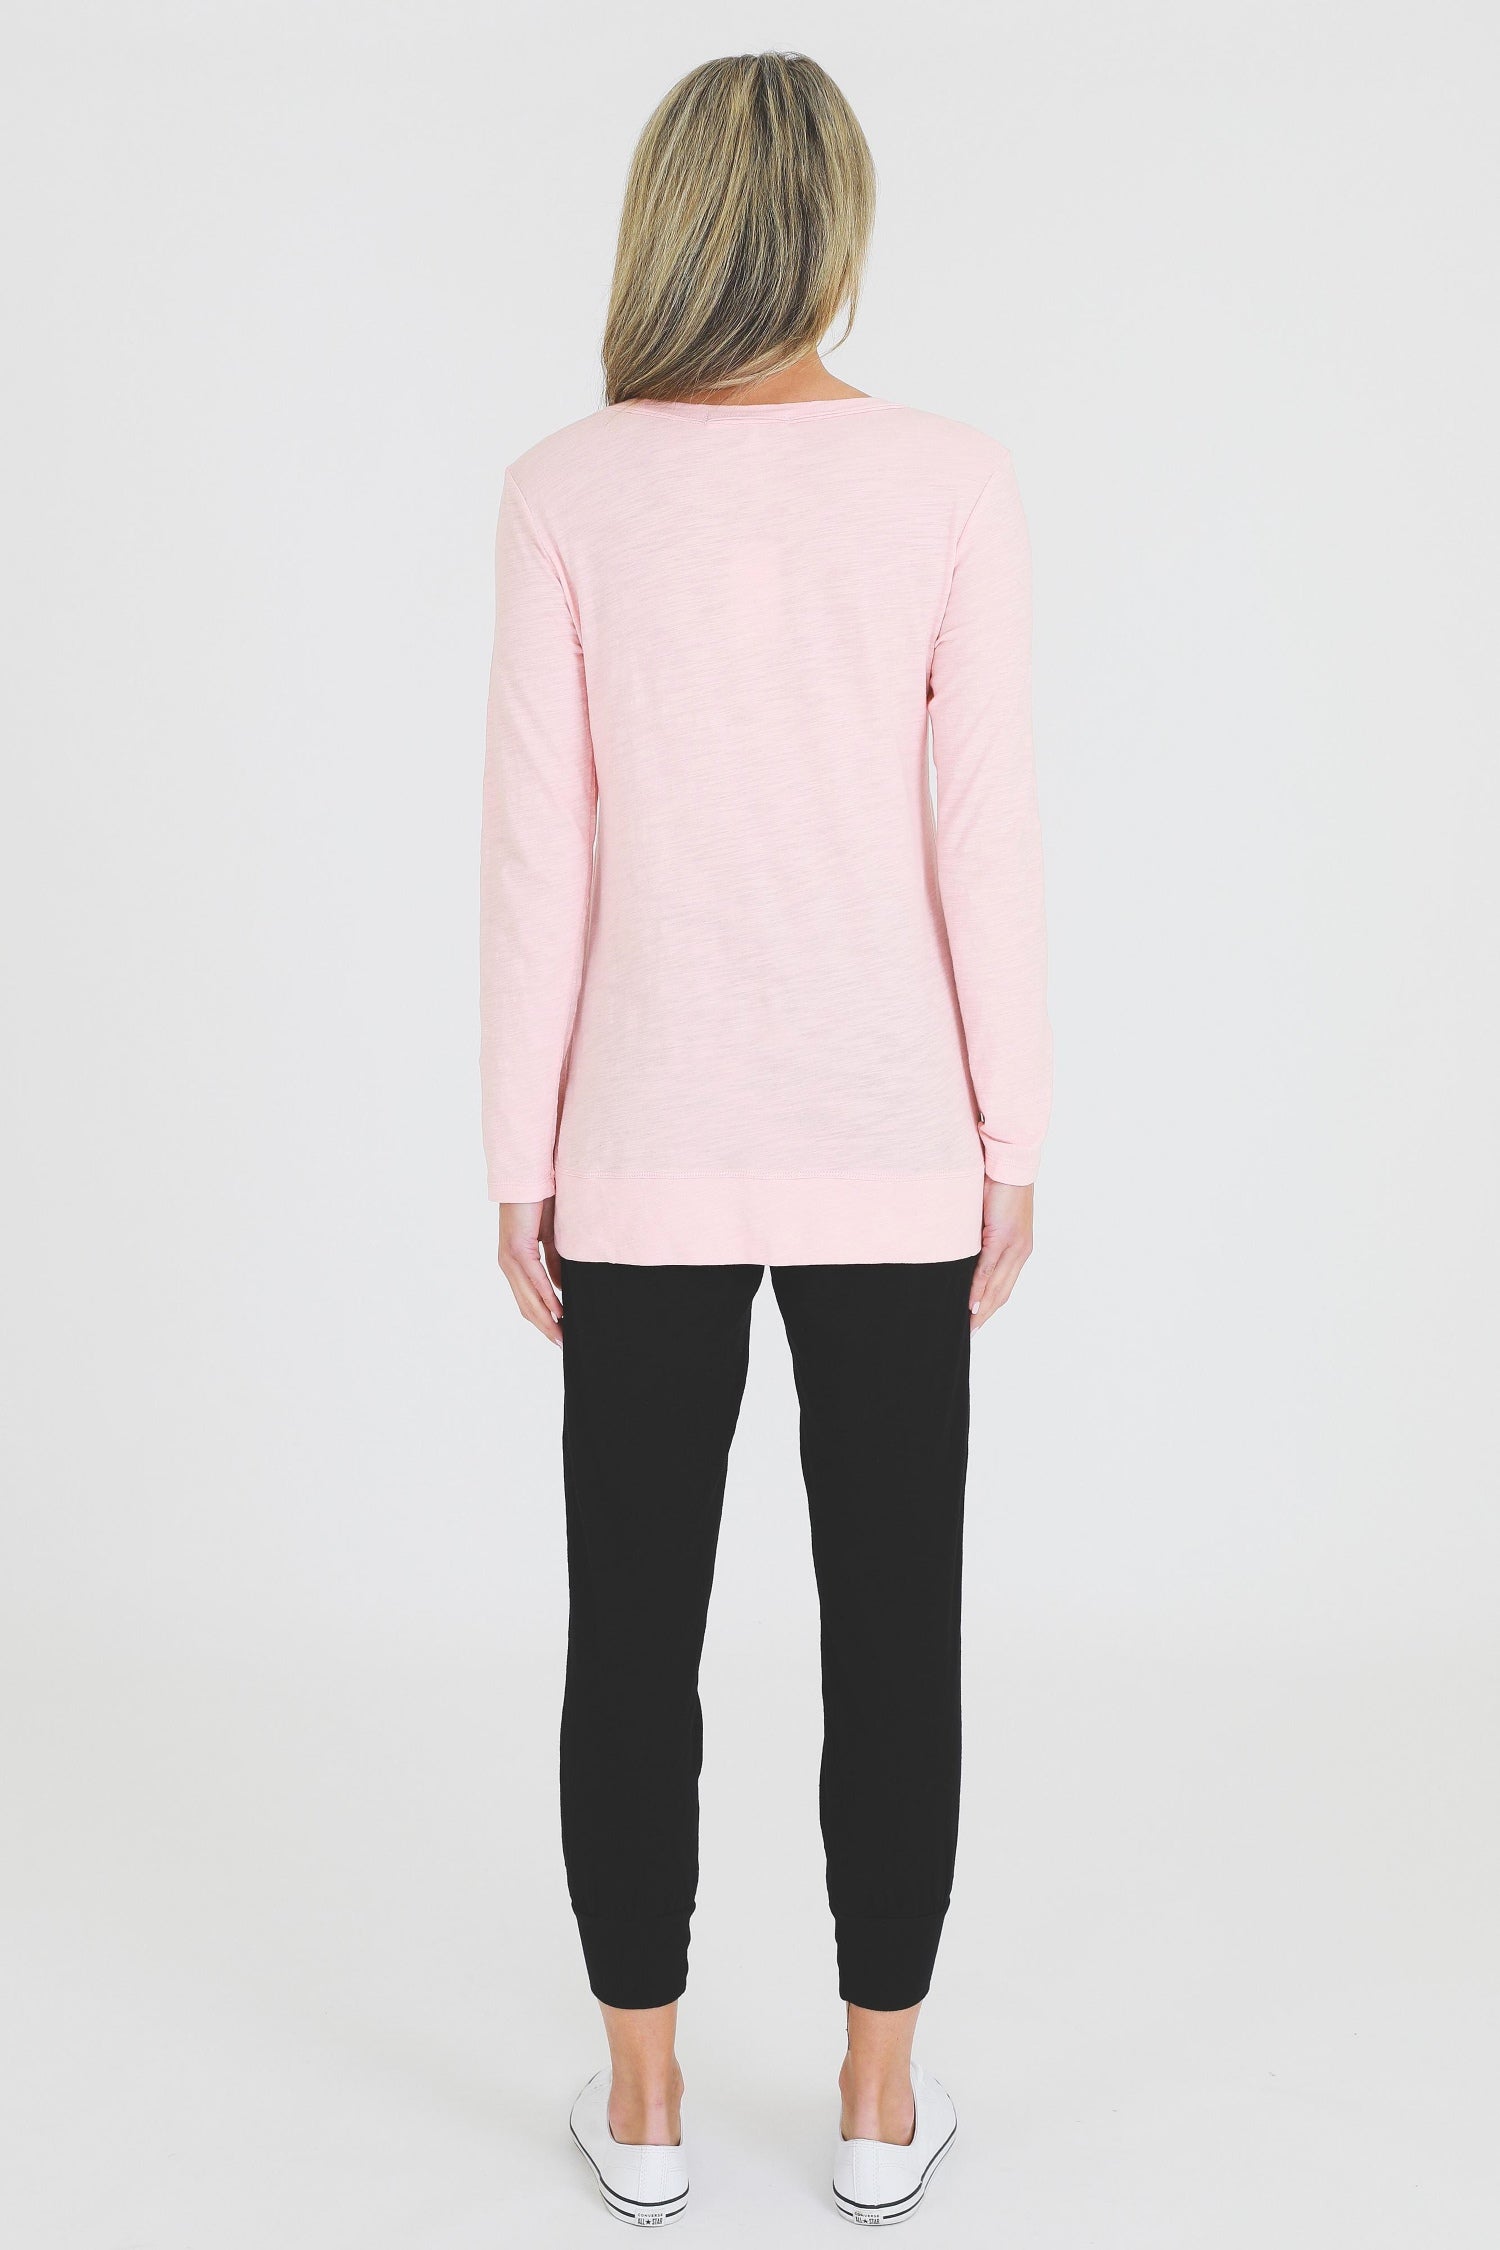 pink t shirt #color_misty rose